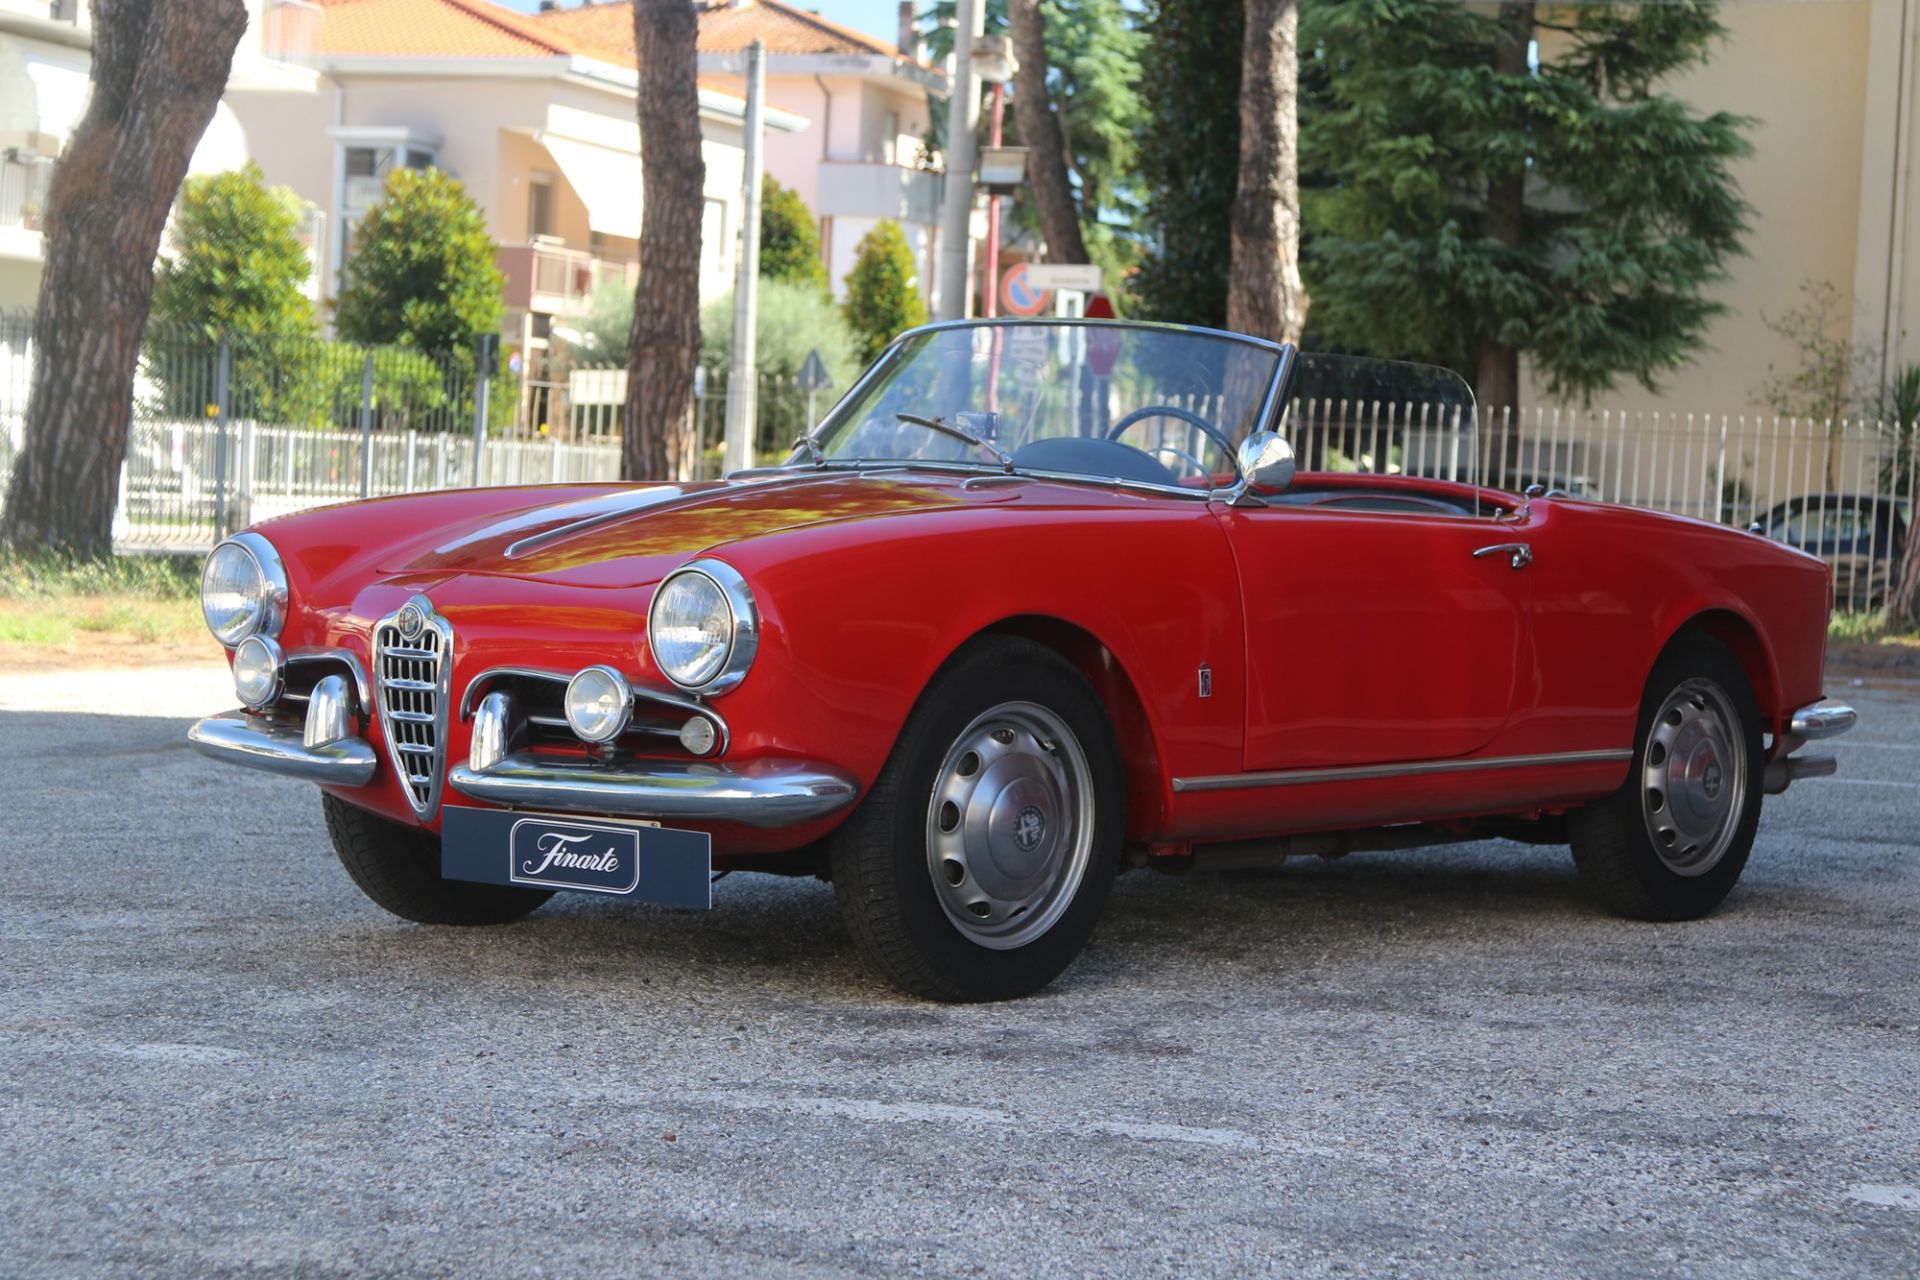 1957 Alfa Romeo Giulietta spider veloce (Pinin Farina) - Image 3 of 15